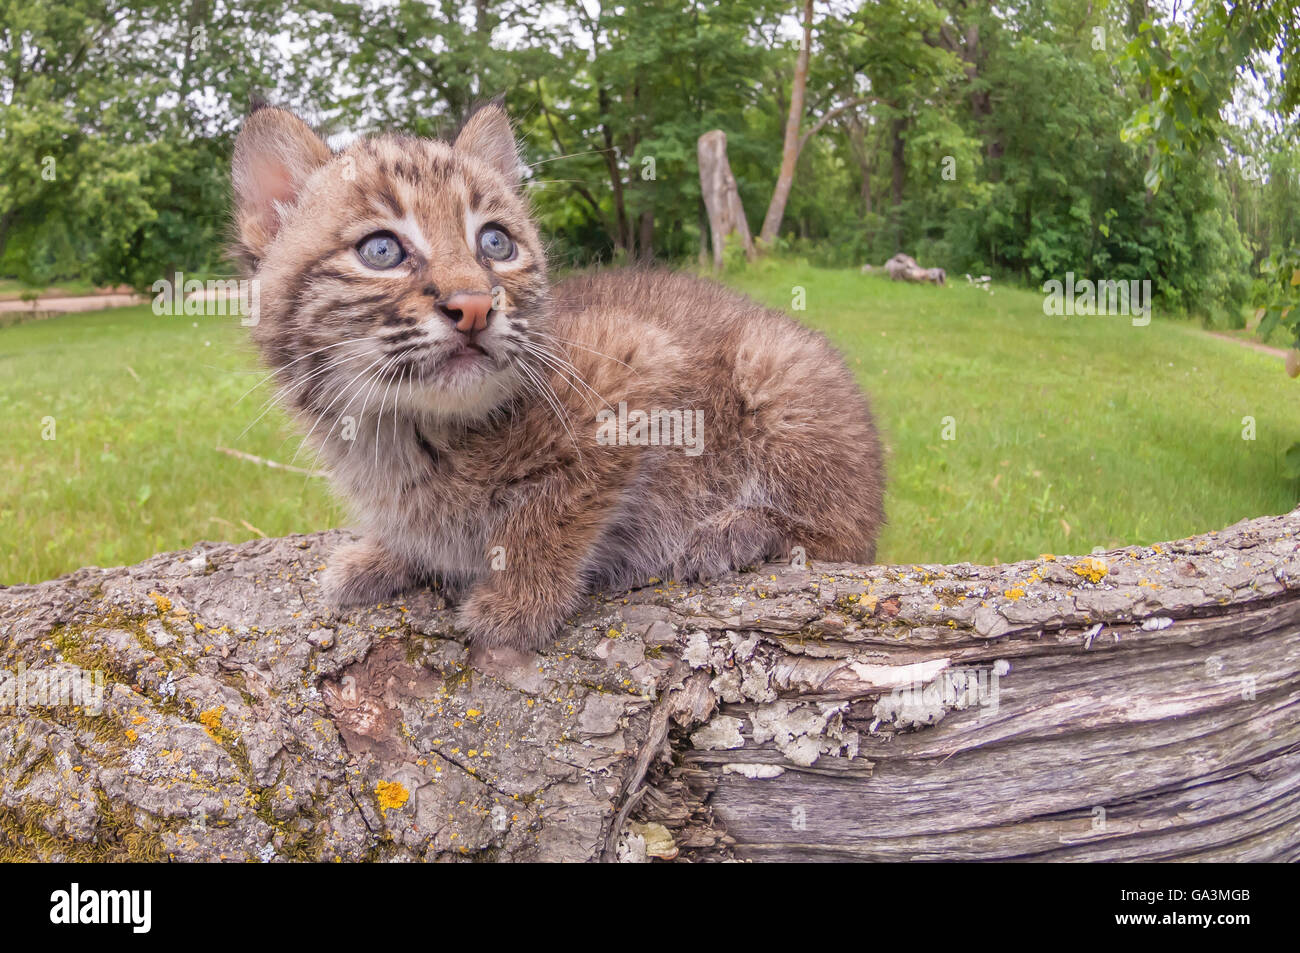 Chaton, Bobcat lynx (Felis rufus), 8 semaines, s'étend du sud du Canada au nord du Mexique Banque D'Images